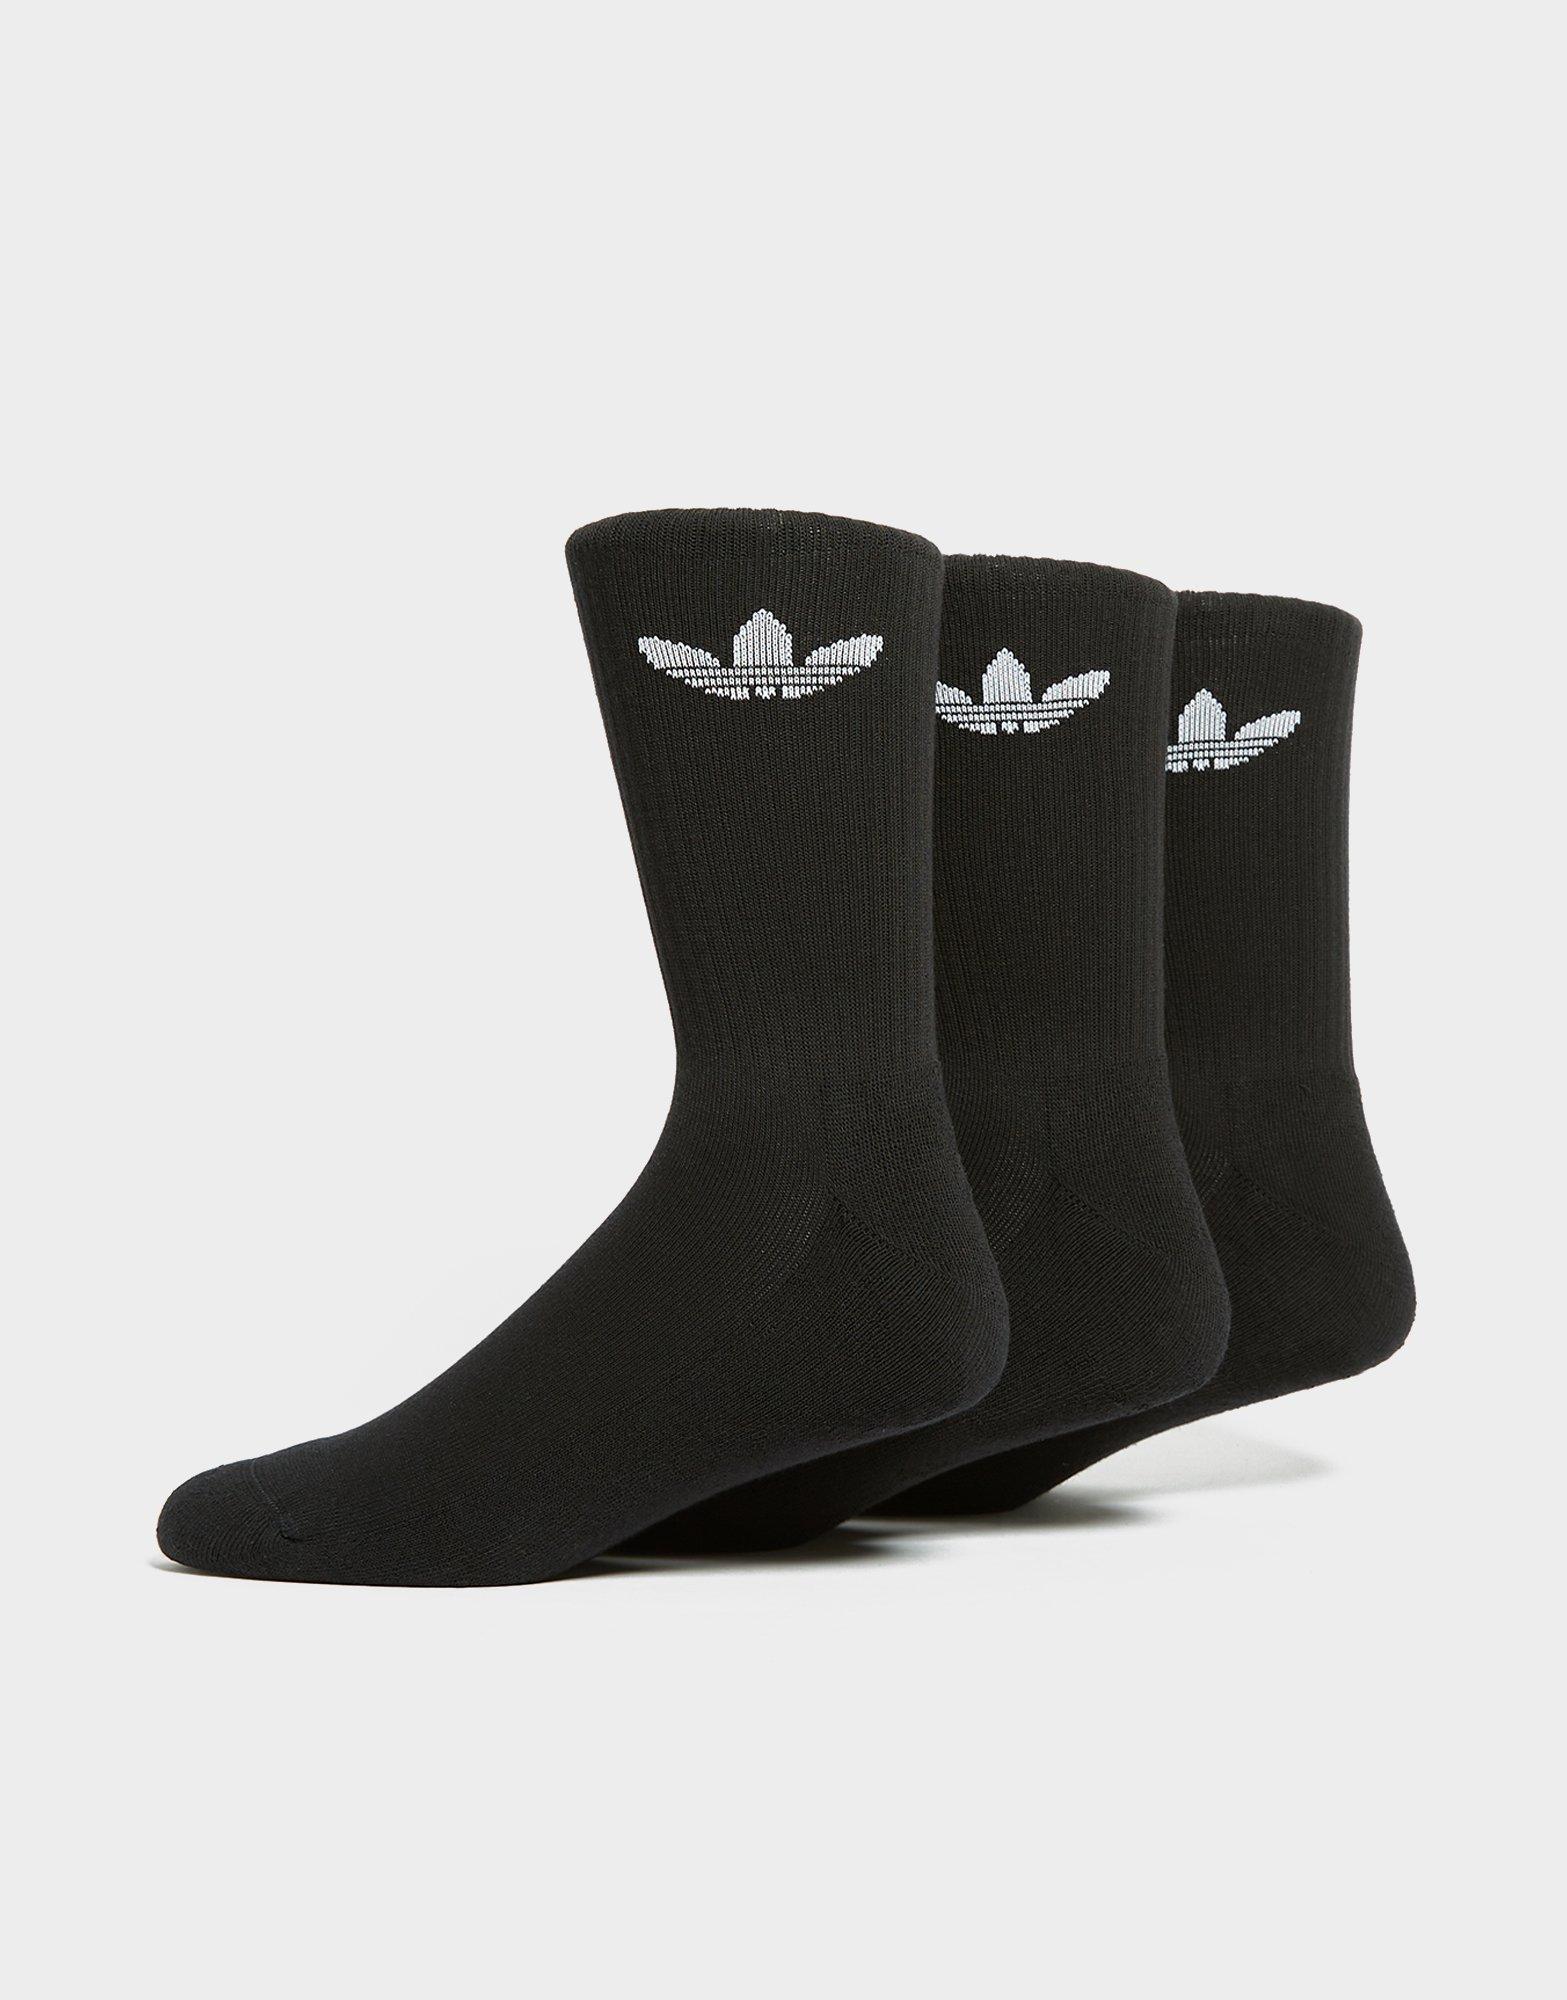  adidas Knit Hockey Sock - Men's Hockey S Black/White